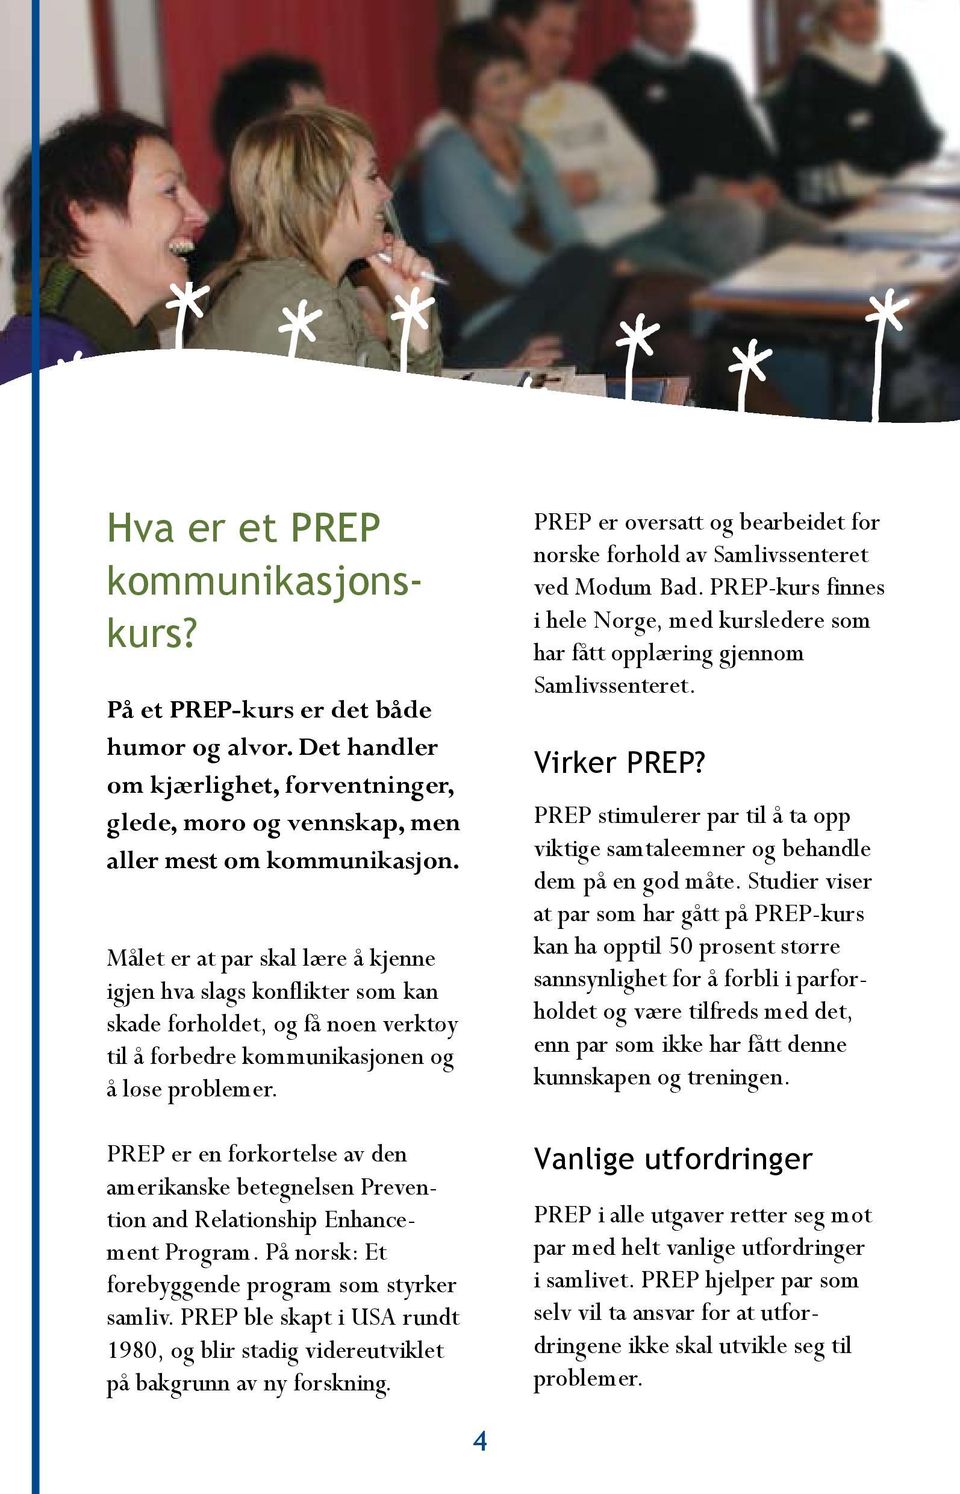 PREP er en forkortelse av den amerikanske betegnelsen Prevention and Relationship Enhancement Program. På norsk: Et forebyggende program som styrker samliv.